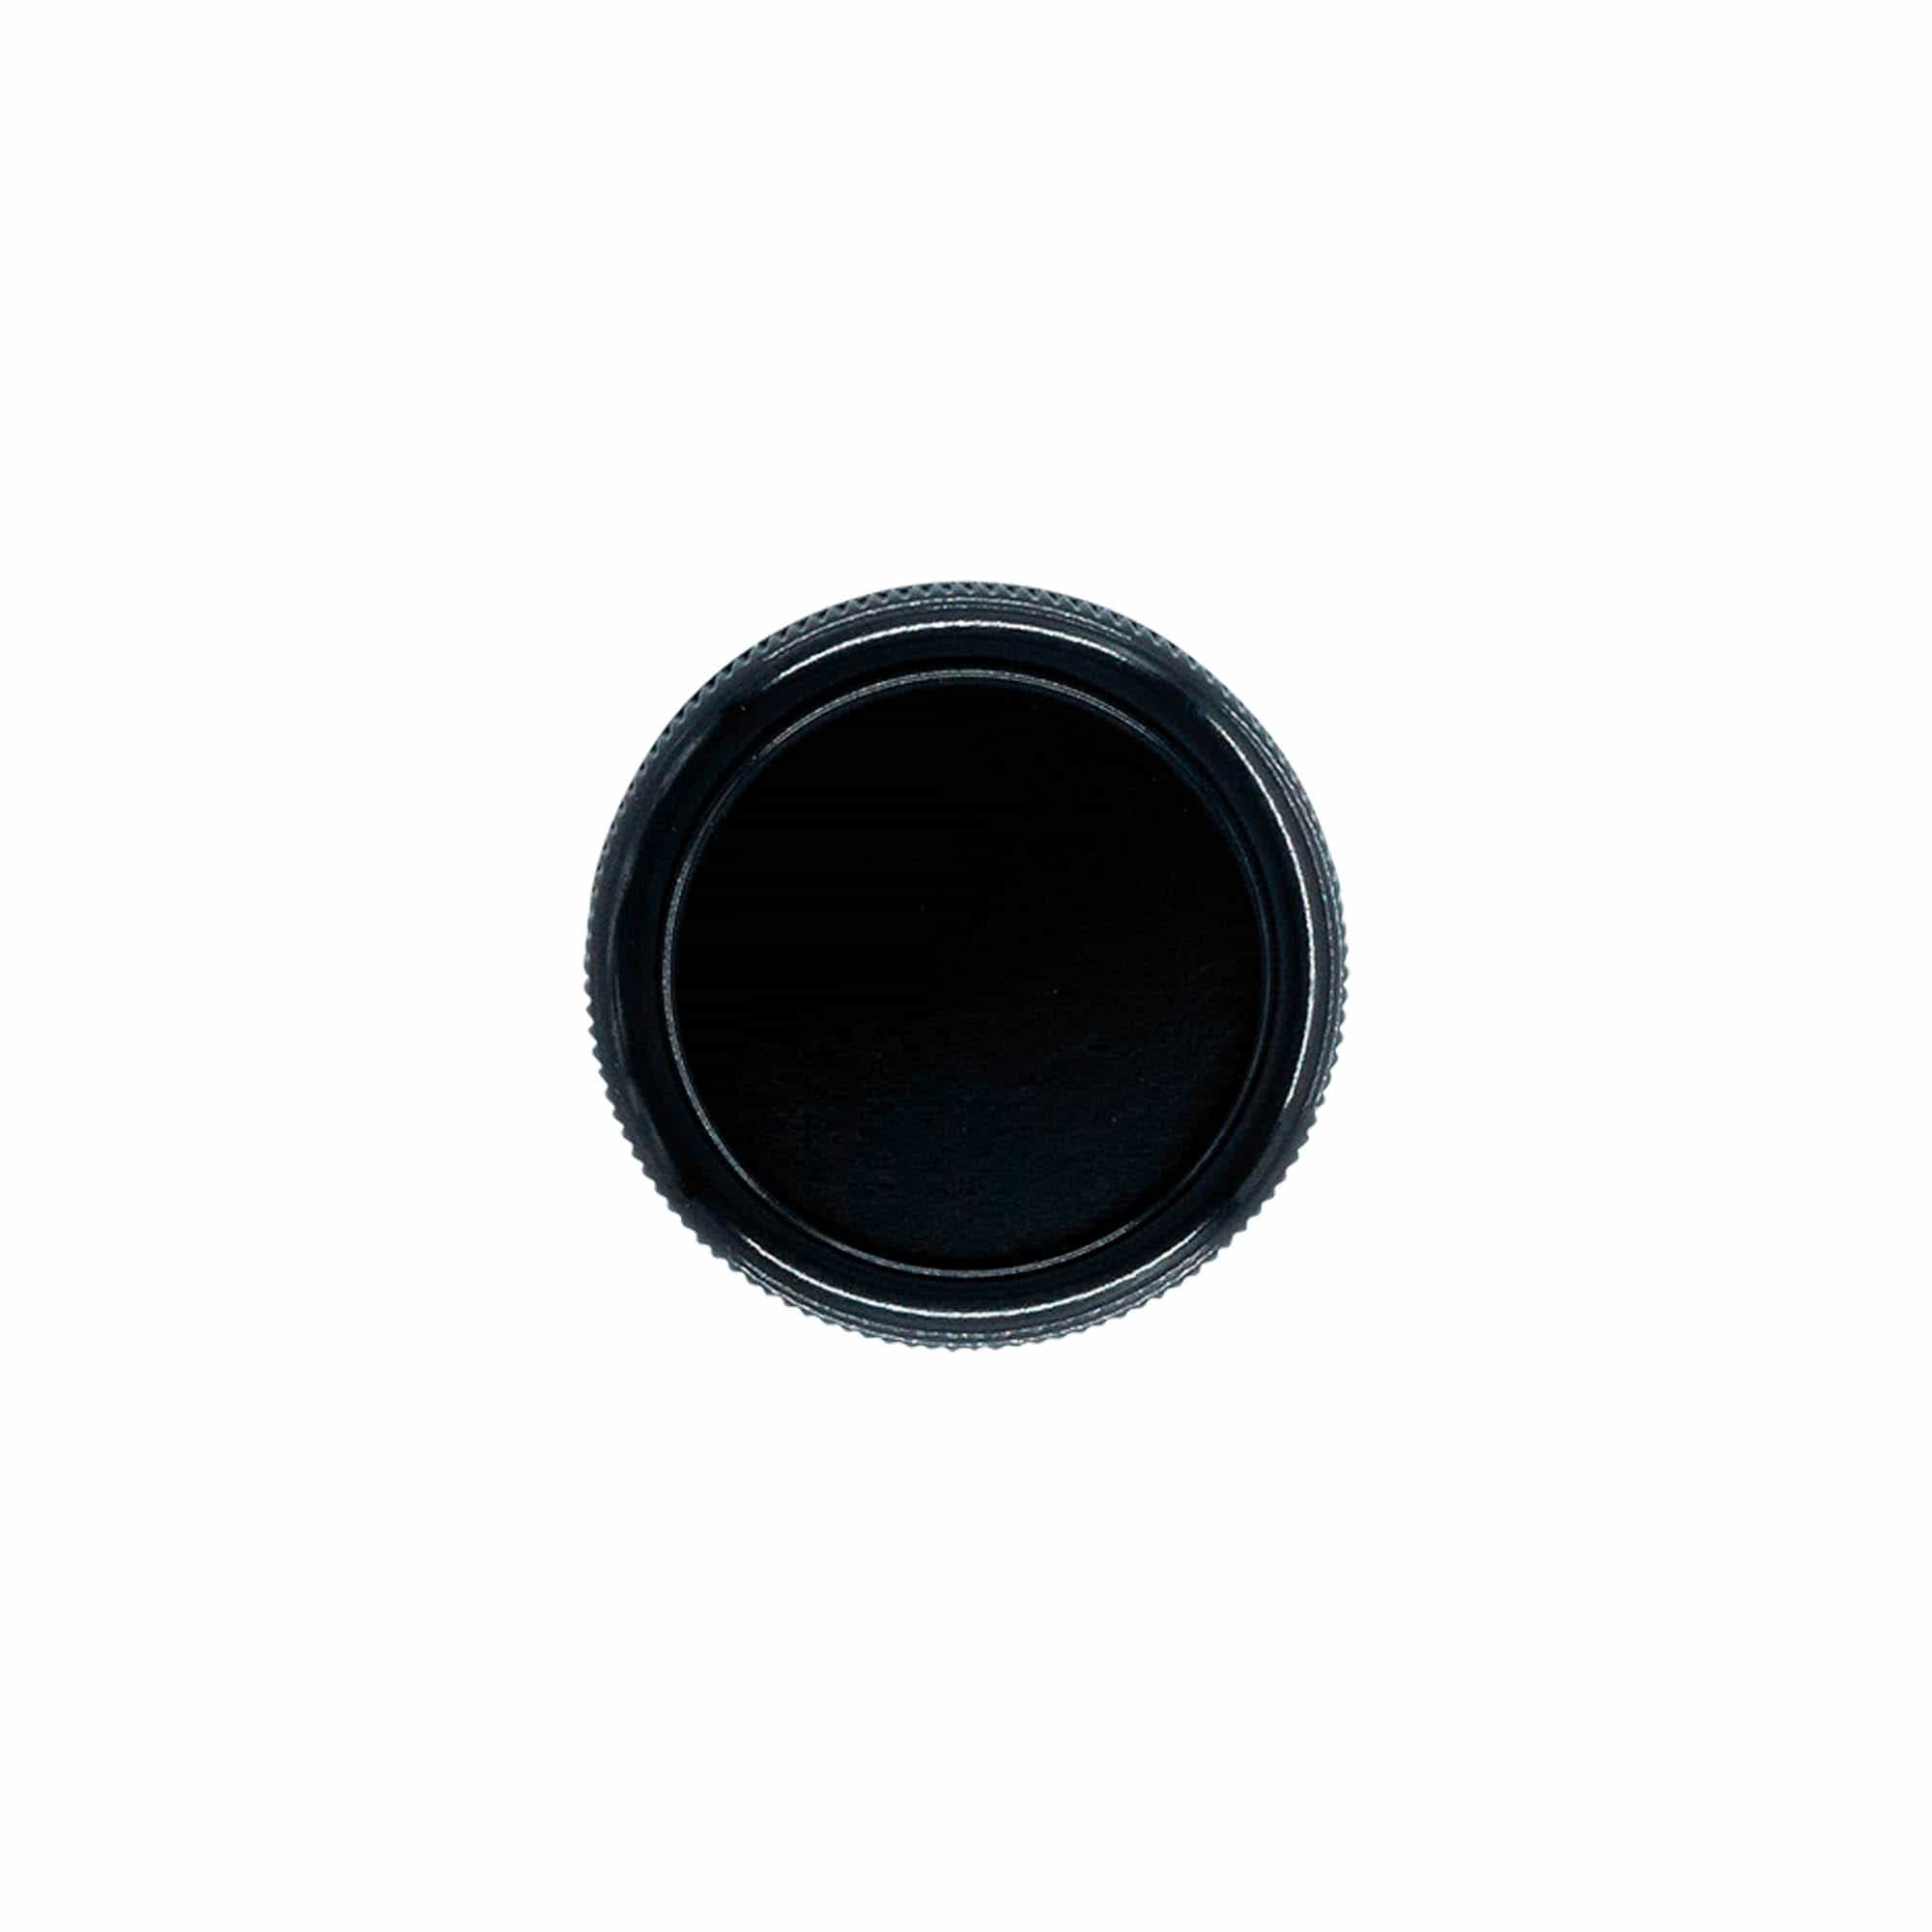 Zakrętka 'Kałamarz', tworzywo sztuczne HPM, kolor czarny